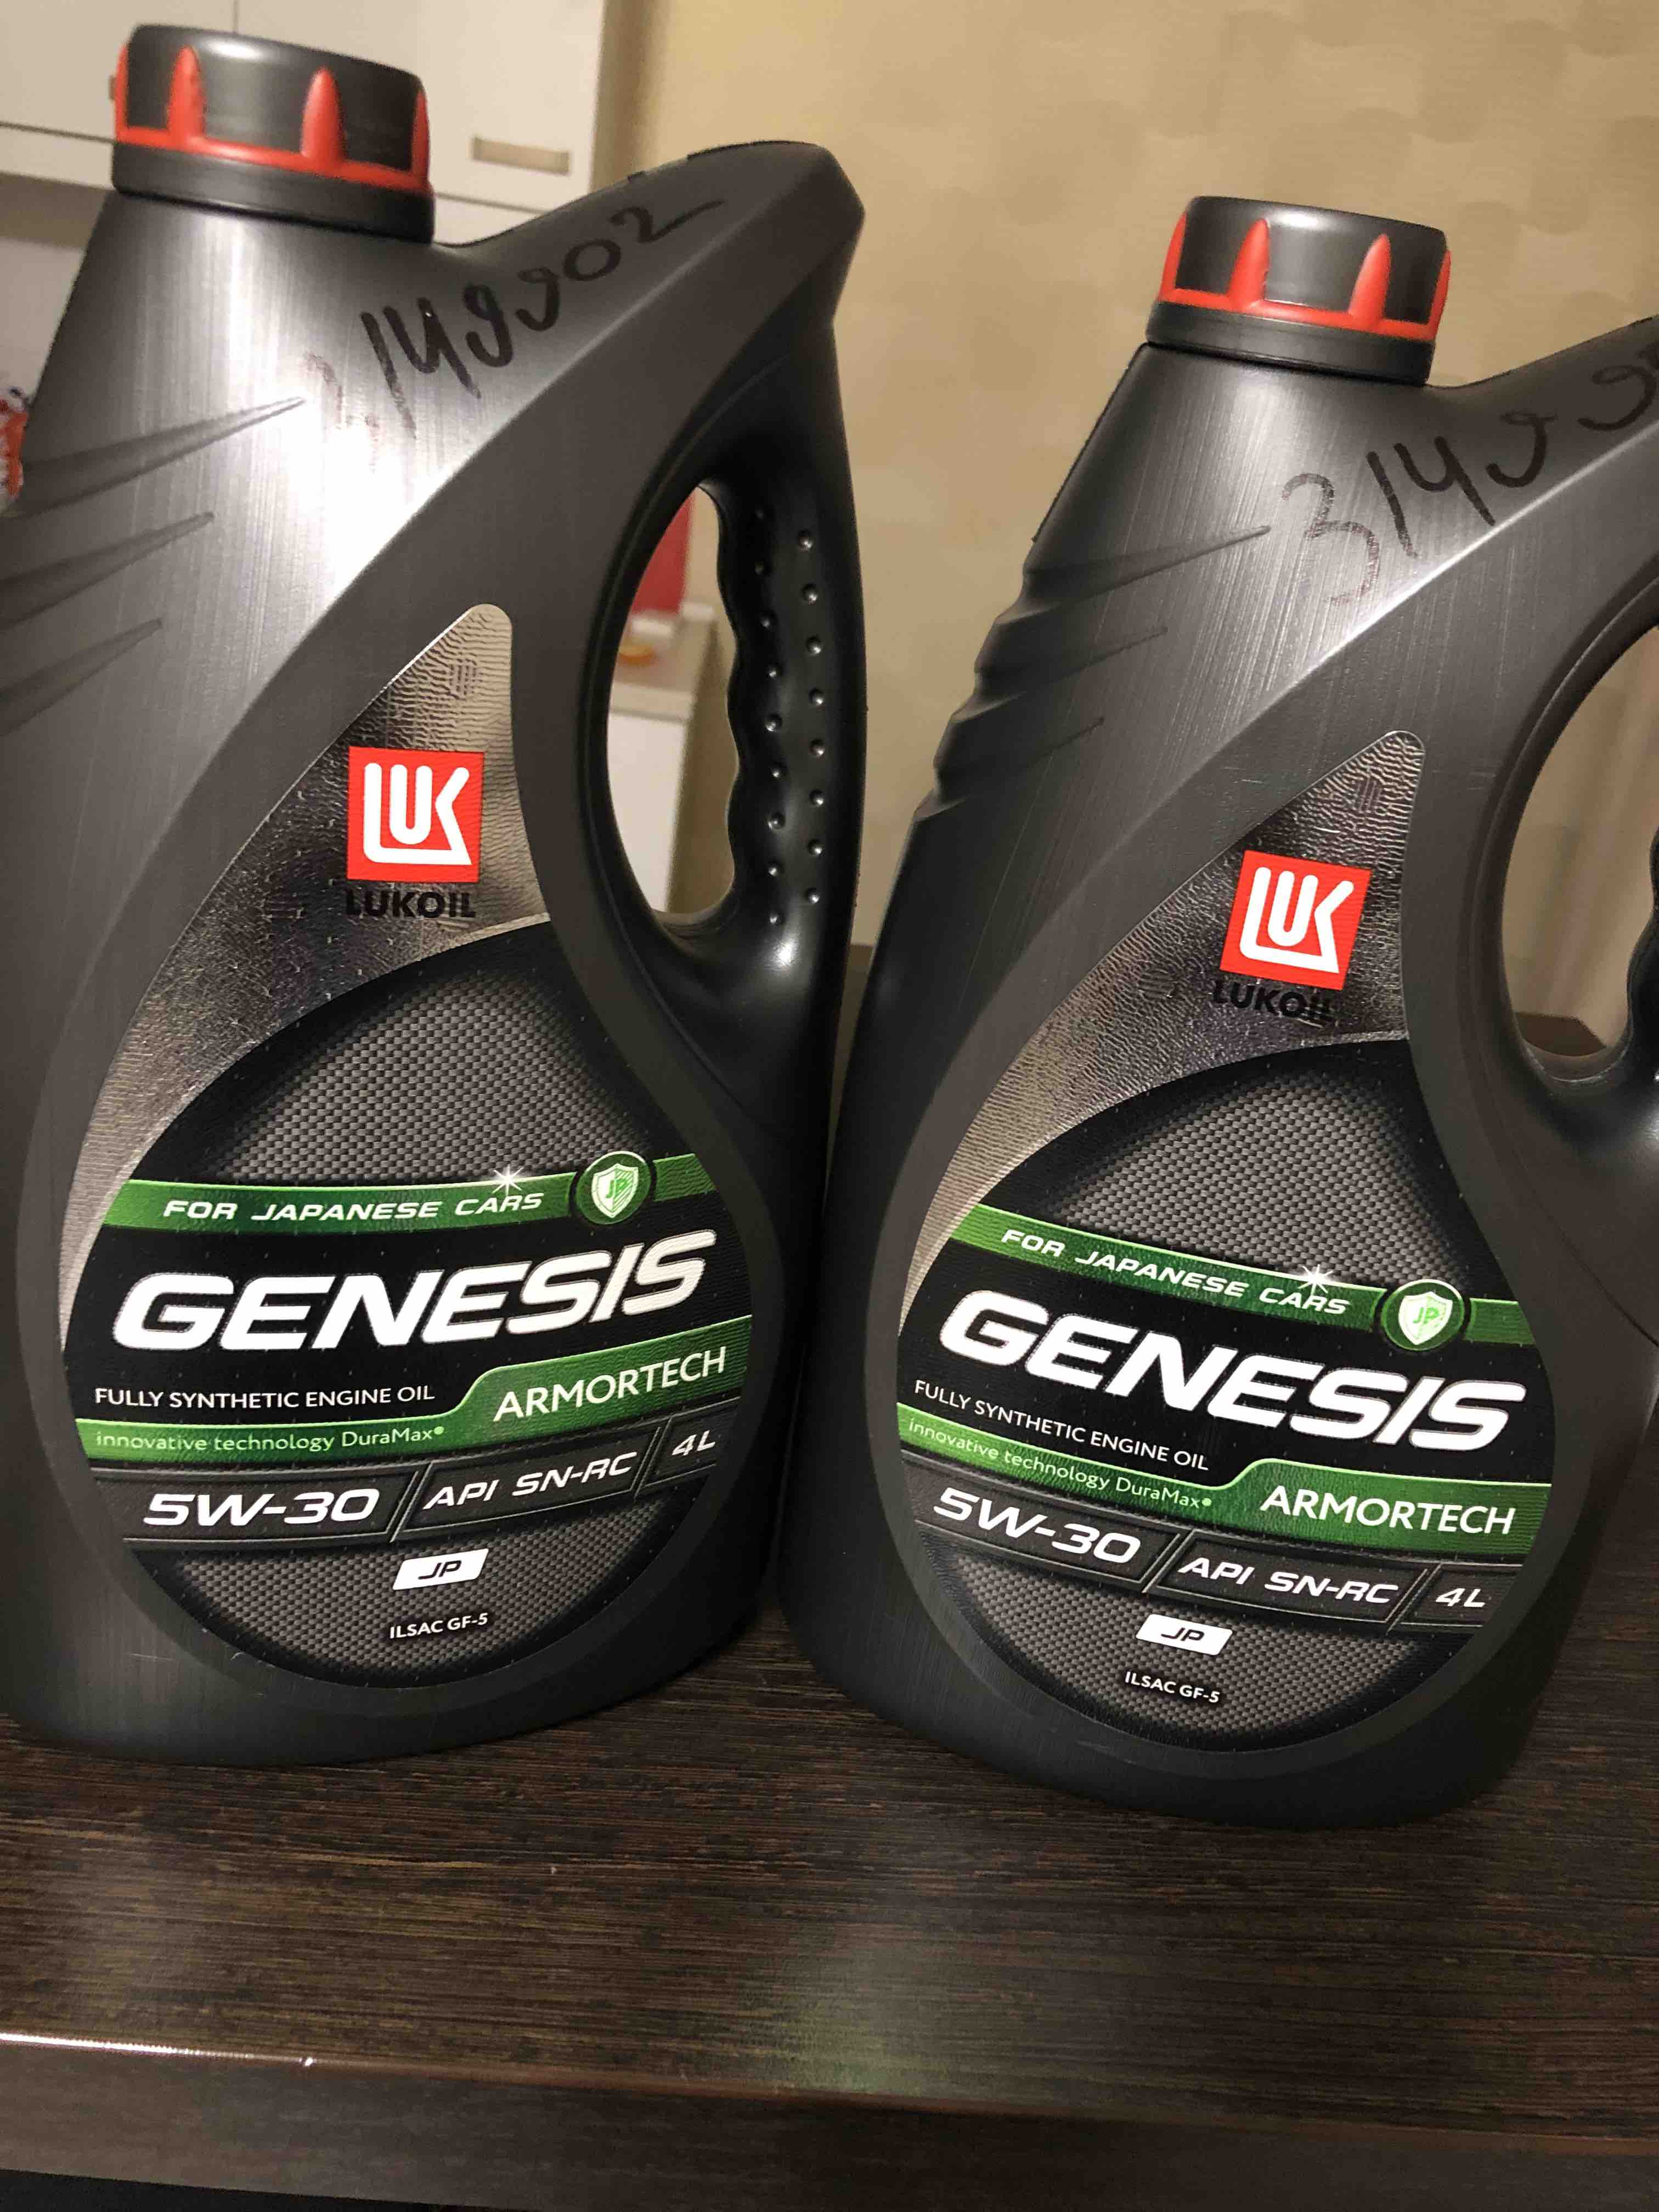 Lukoil Genesis GK. Как проверить масло лукойл генезис на подлинность